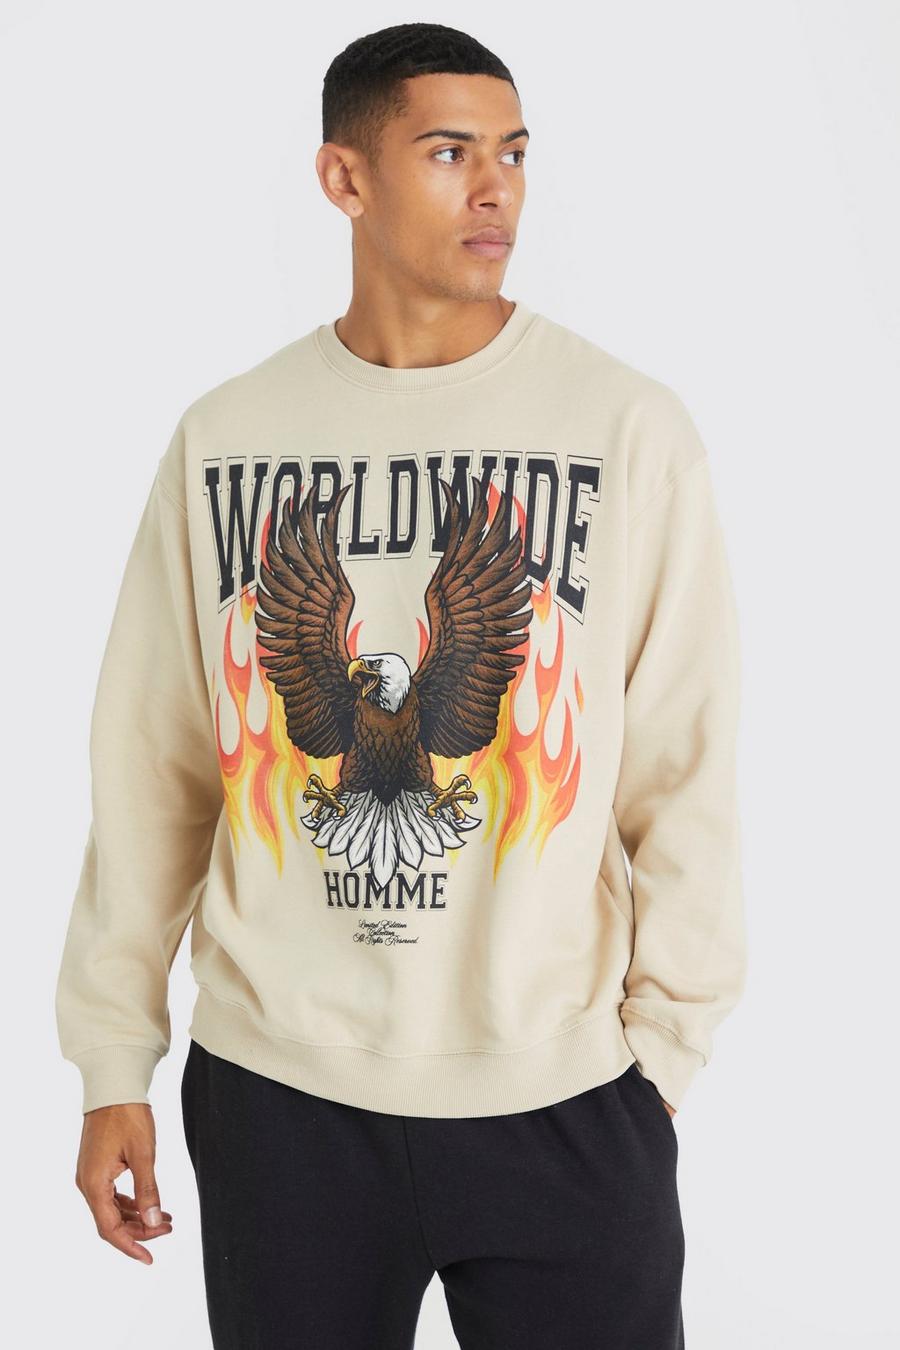 Worldwide Graphic Sweatshirt